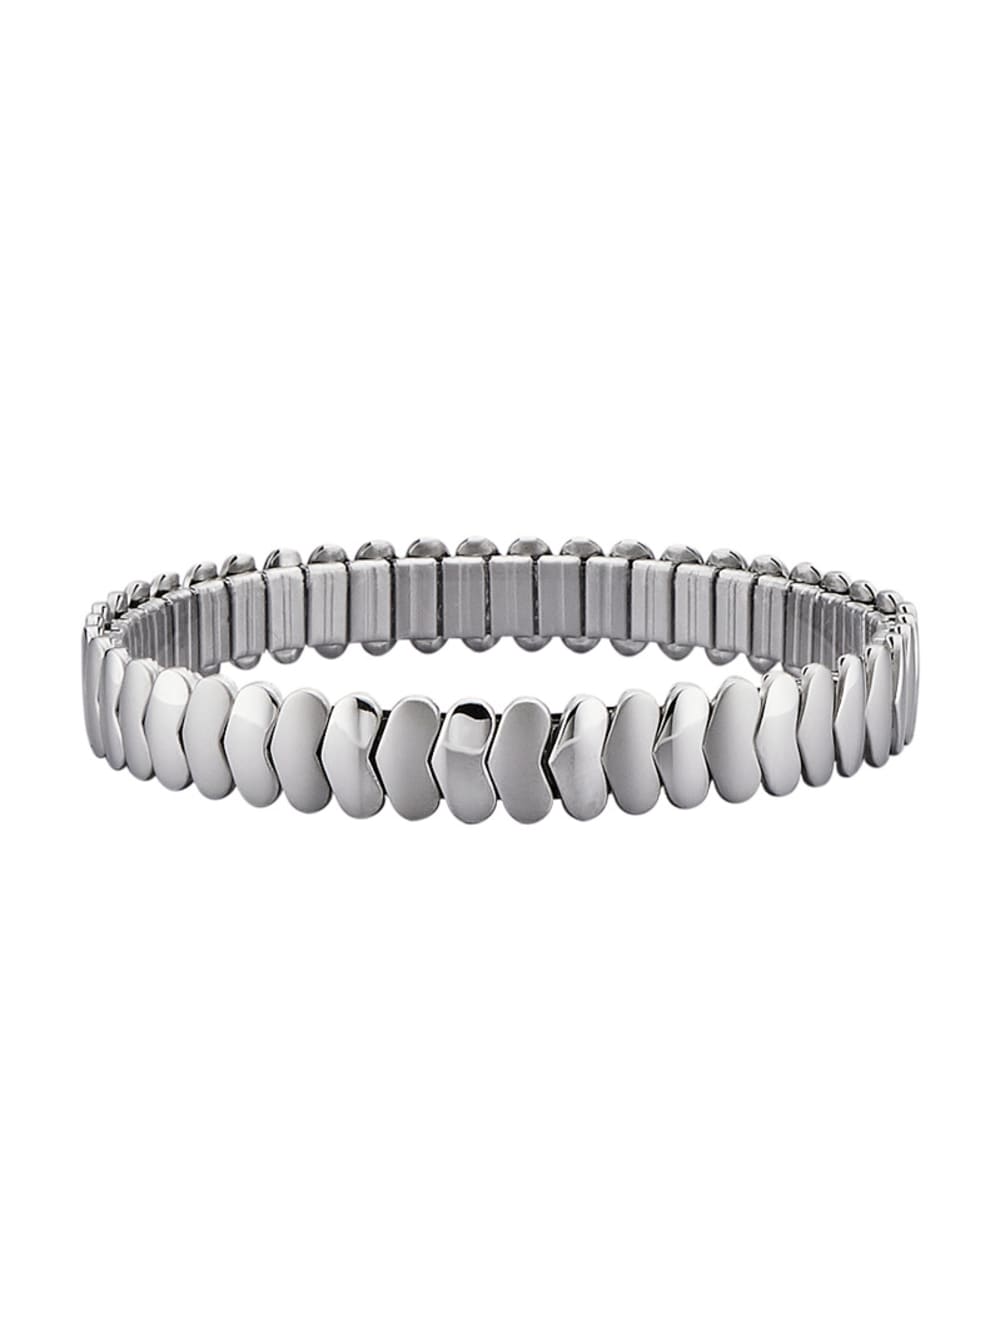 Buy Womens Negative Ion BraceletsALL SIZESBalance Bracelet Magnetic  Bracelet for Pain Tunnel Tendonitis Tennis Elbow Joint Wrist BraceletHSS4  16 cm  63 in Online at desertcartINDIA